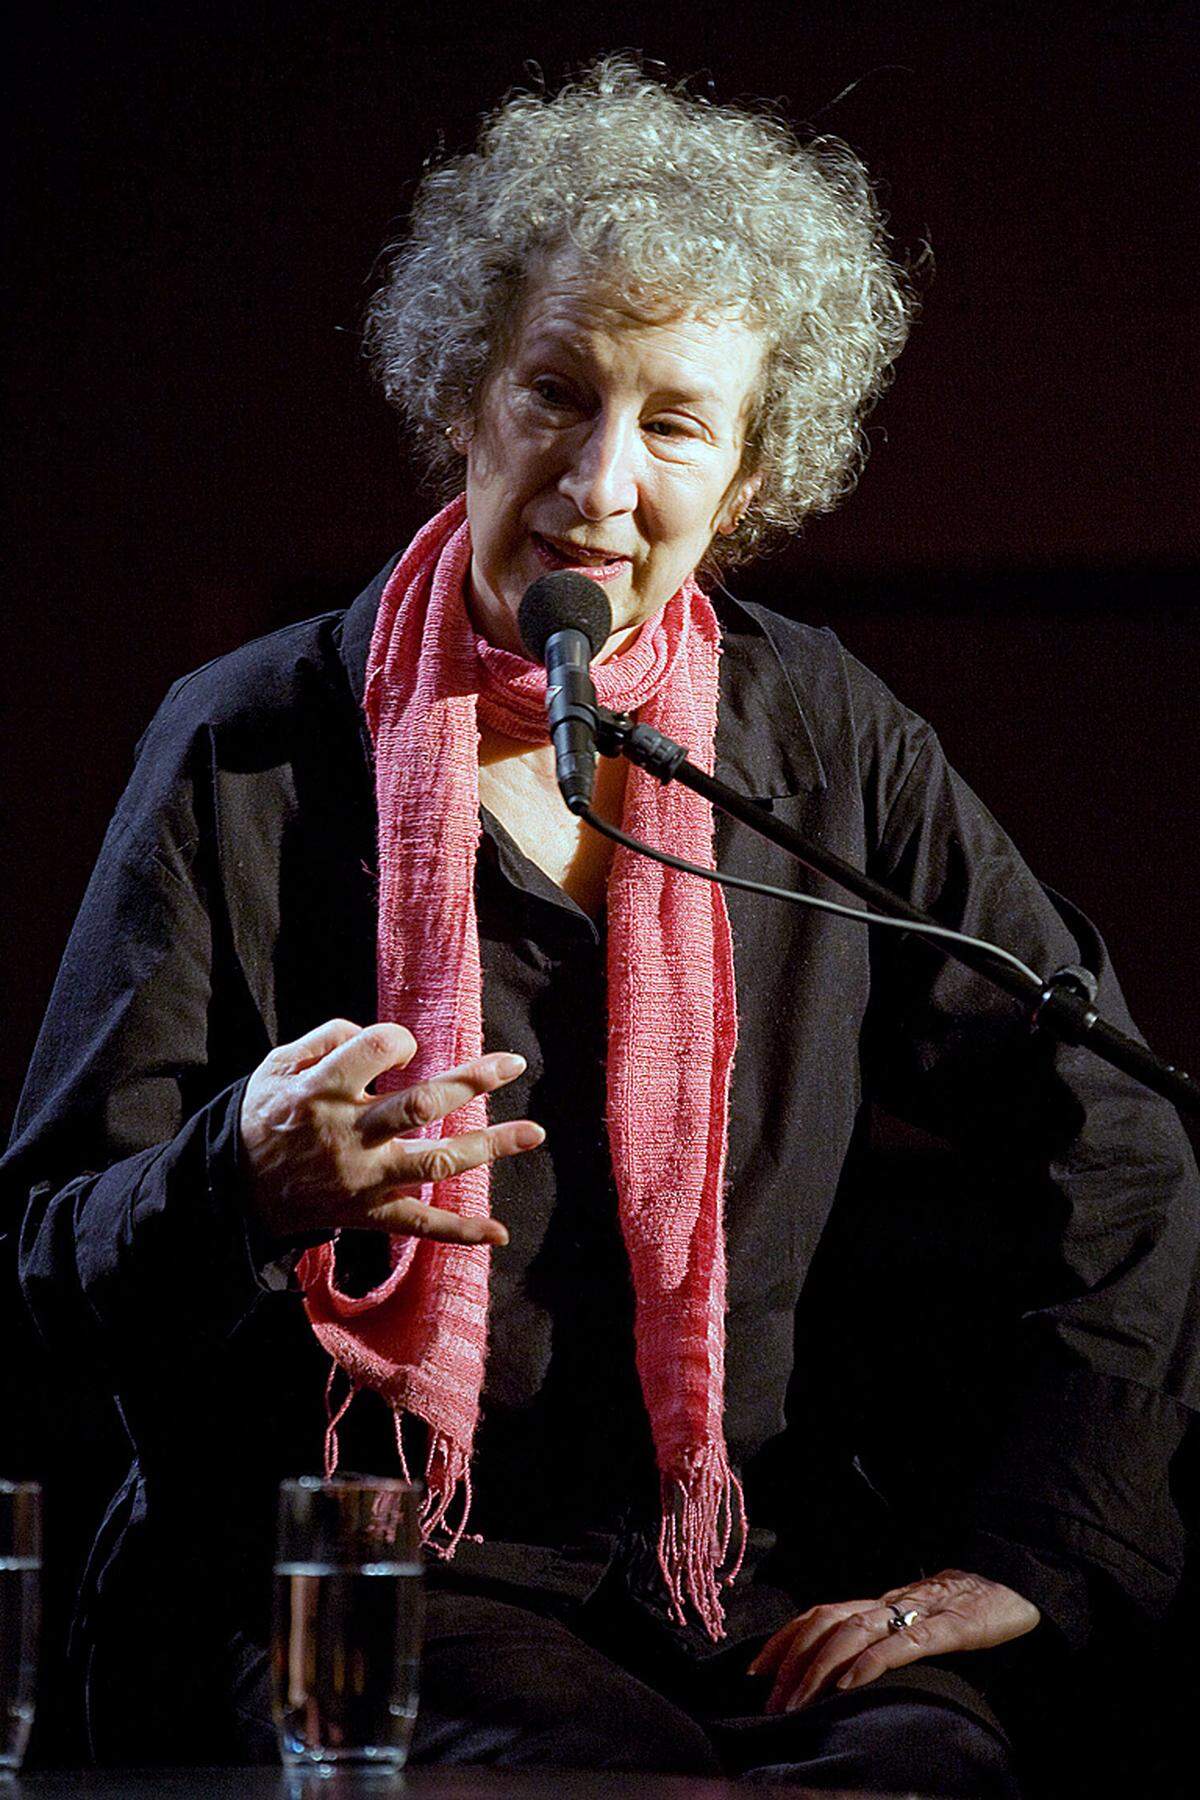 Die kanadische Schriftstellerin Margaret Atwood hat sich hocherfreut über den Nobelpreisgewinn ihrer Landsfrau und Freundin Alice Munro gezeigt. Die 73-Jährige, die selbst zum erweiterten Kreis der Favoriten zählte, schrieb beim Kurznachrichtendienst Twitter: "Huurra! Alice Munro gewinnt den Nobelpreis für Literatur".  In einem Interview im Jahr 2006 hatte Munro erzählt, sie treffe sich einmal pro Woche in ihrem 3000-Einwohner-Heimatstädtchen Clinton in einem Restaurant mit Atwood, immer am selben Tisch. Munro damals: "Wir kennen uns schon sehr lange, sie ist eine gute Freundin."